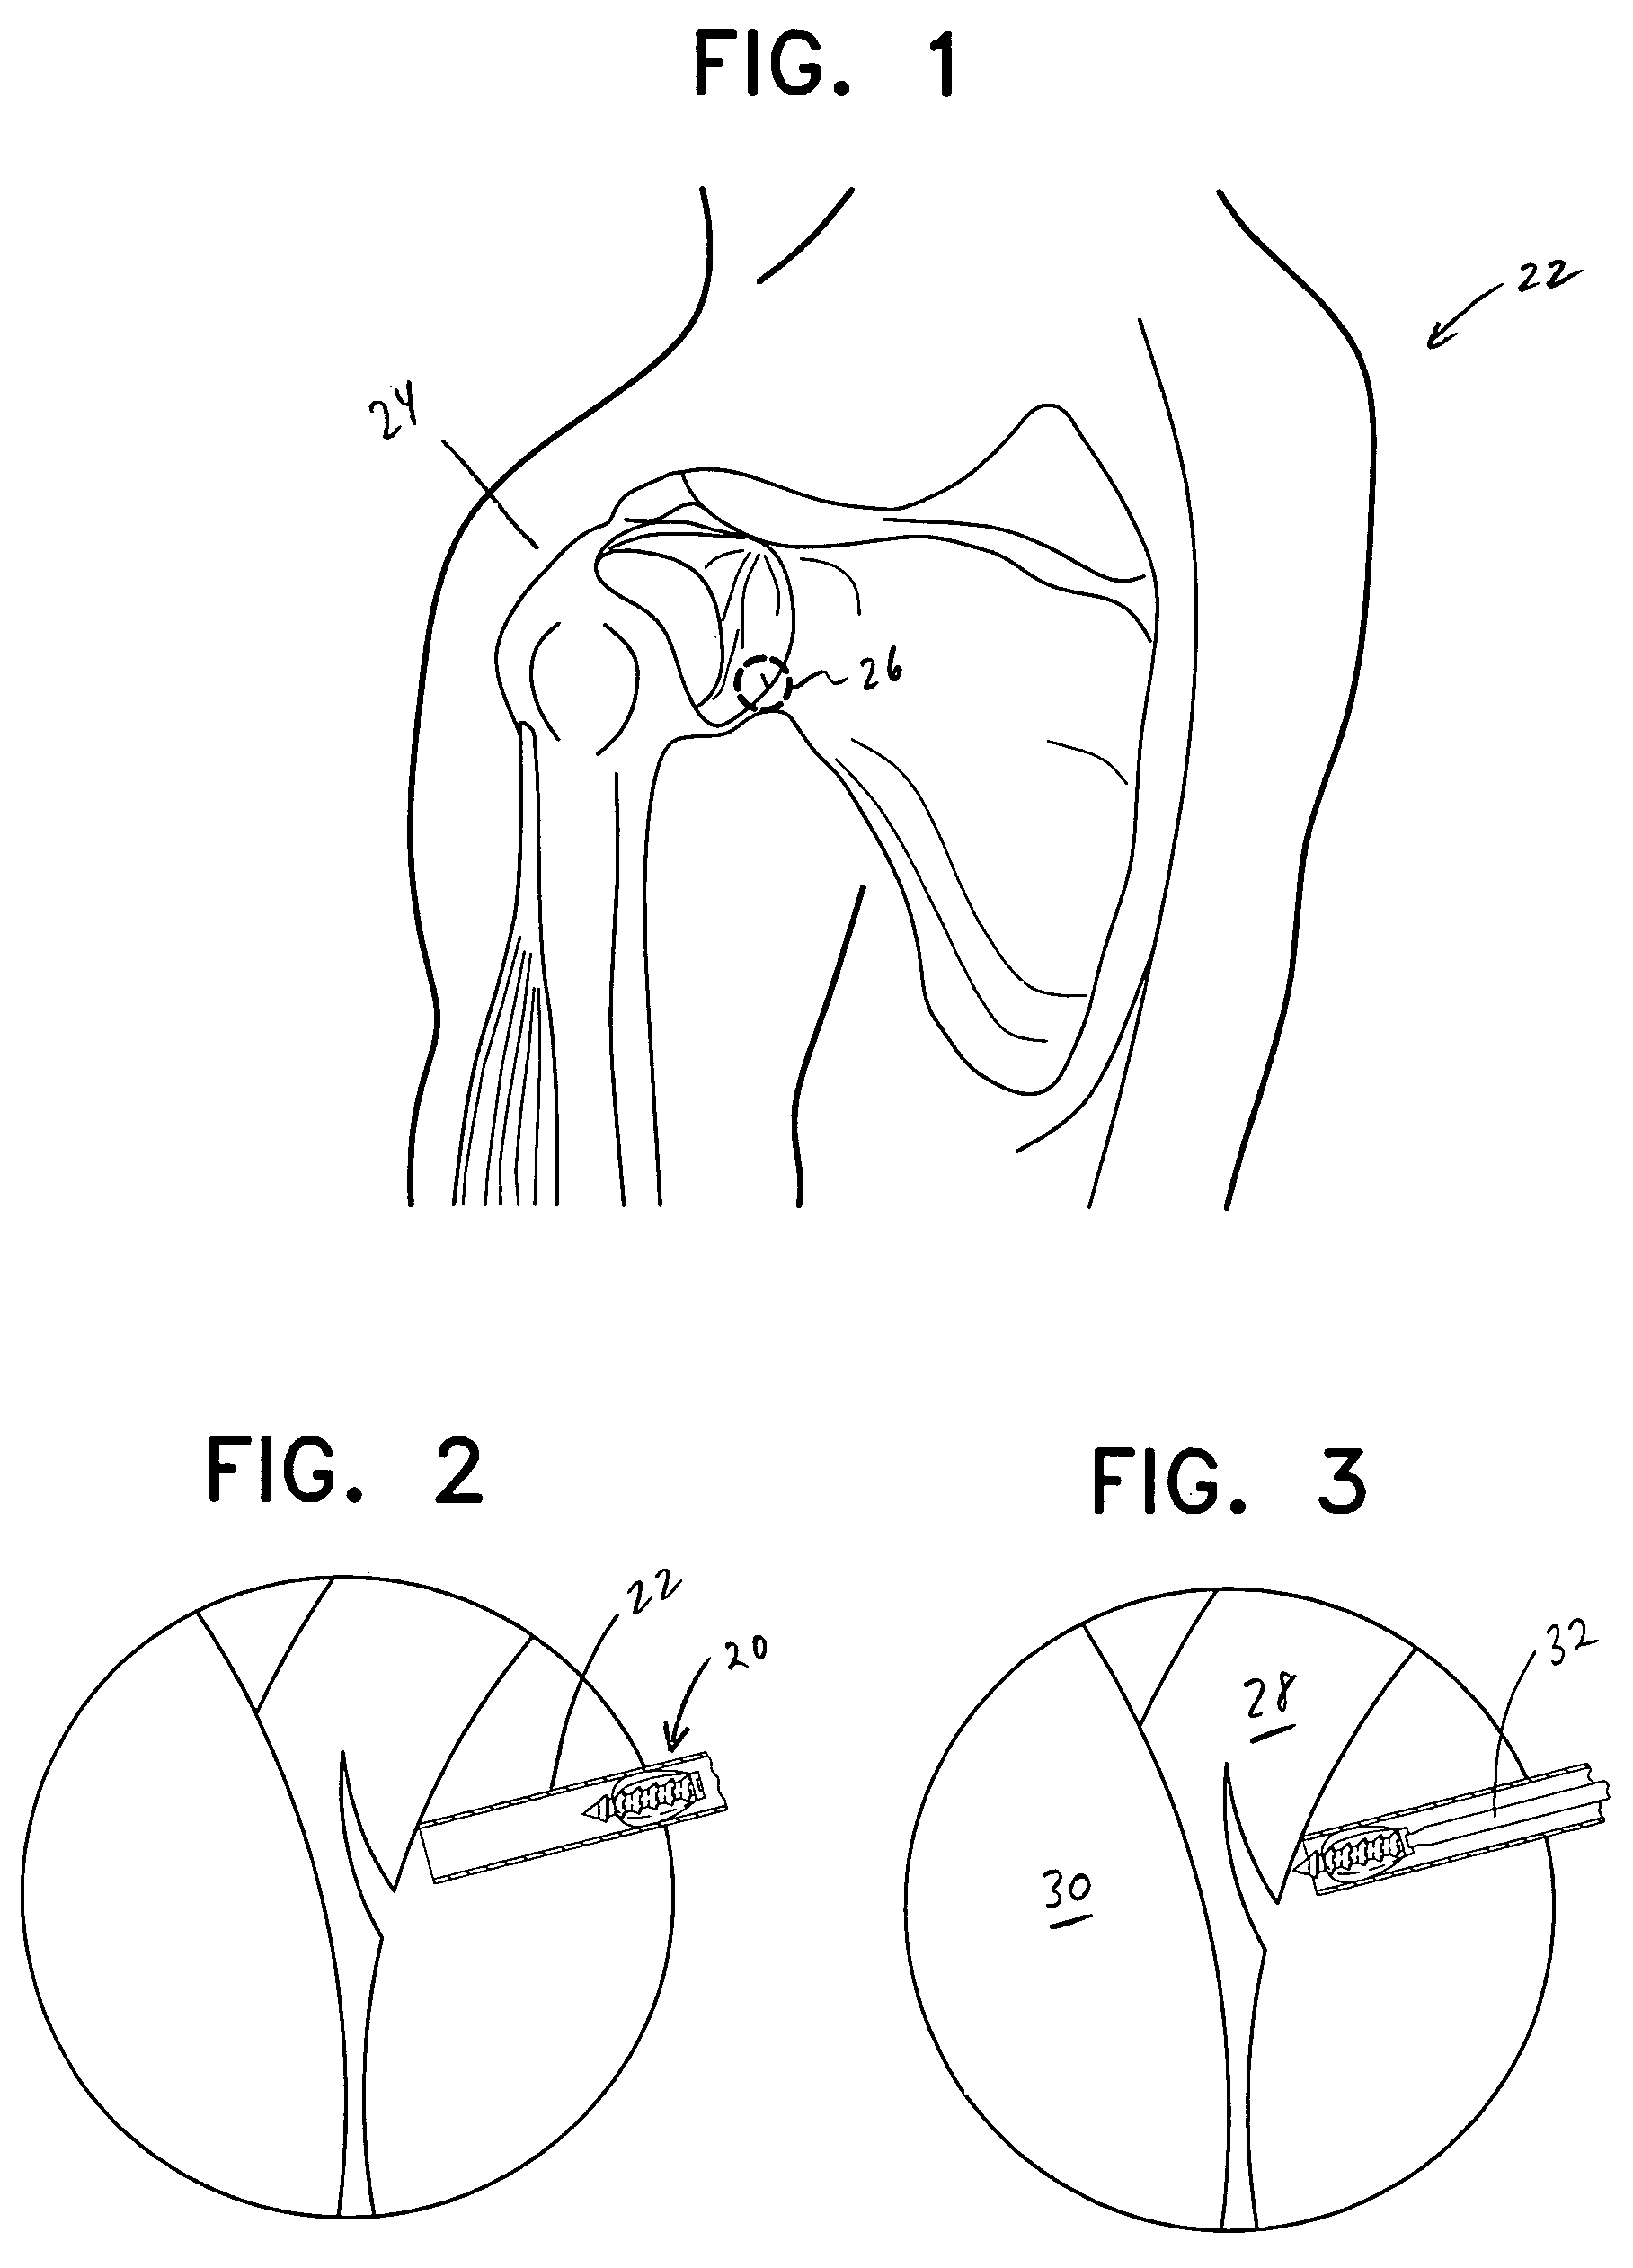 Method and apparatus for repair of torn rotator cuff tendons